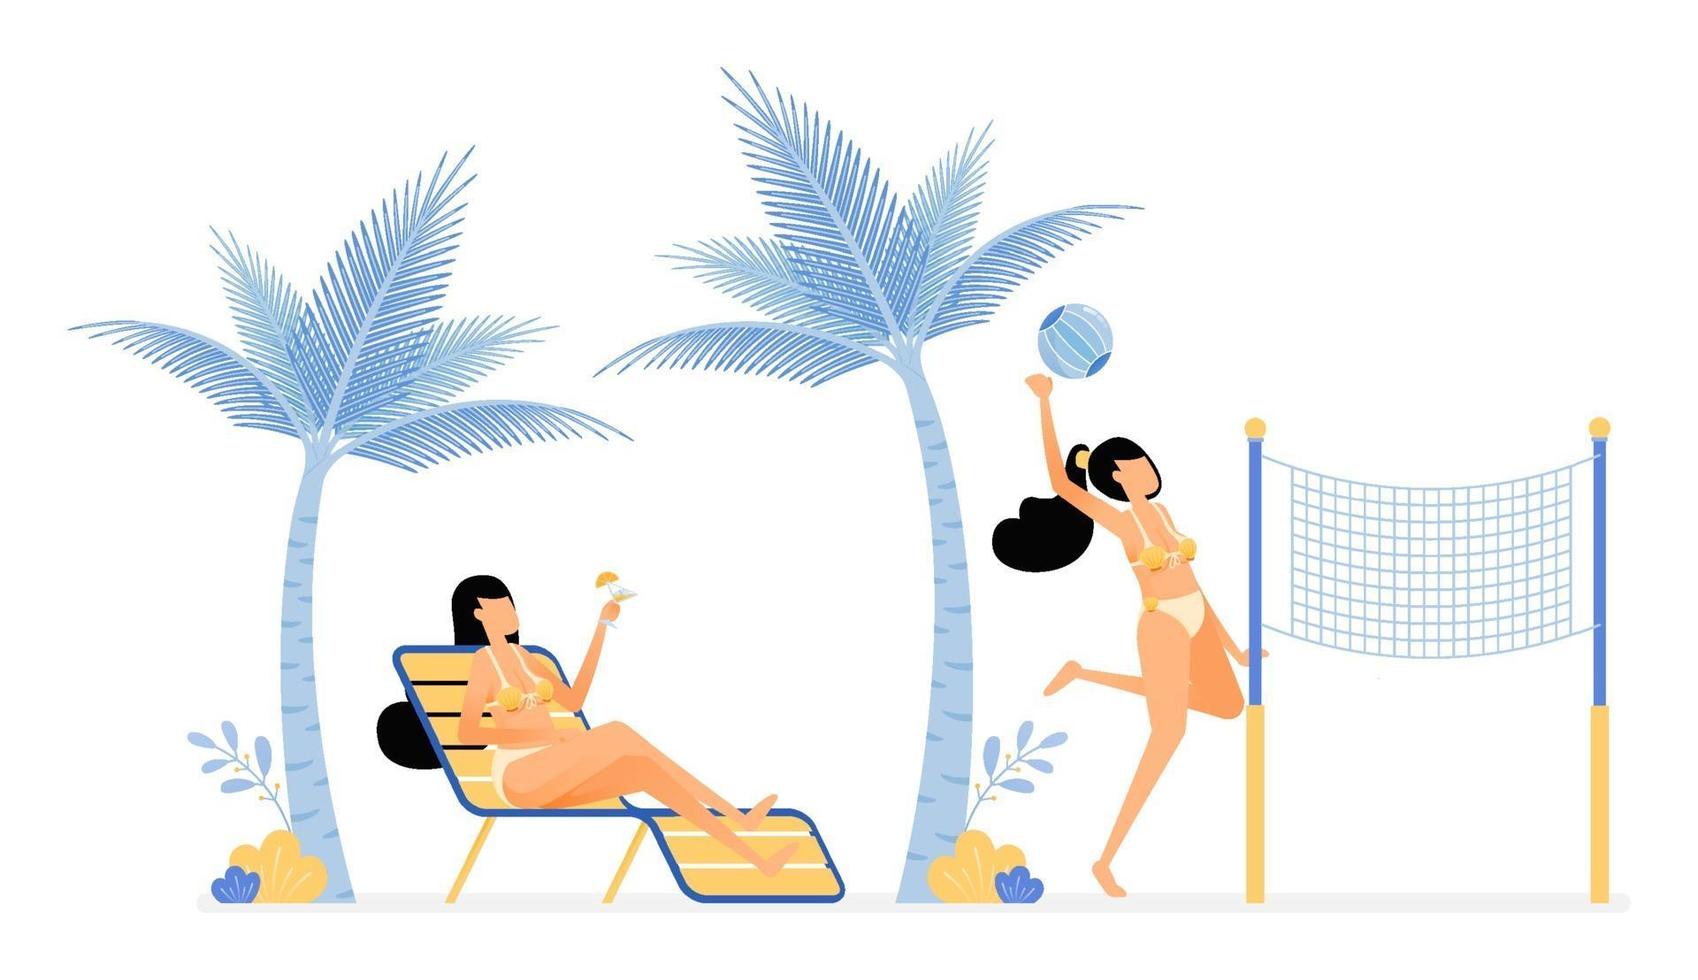 felice vacanza illustrazione di donne che si rilassano e si godono le vacanze sulla spiaggia sdraiati sotto gli alberi di cocco o giocando a pallavolo il disegno vettoriale può essere utilizzato per il marketing mobile del sito Web di banner pubblicitari